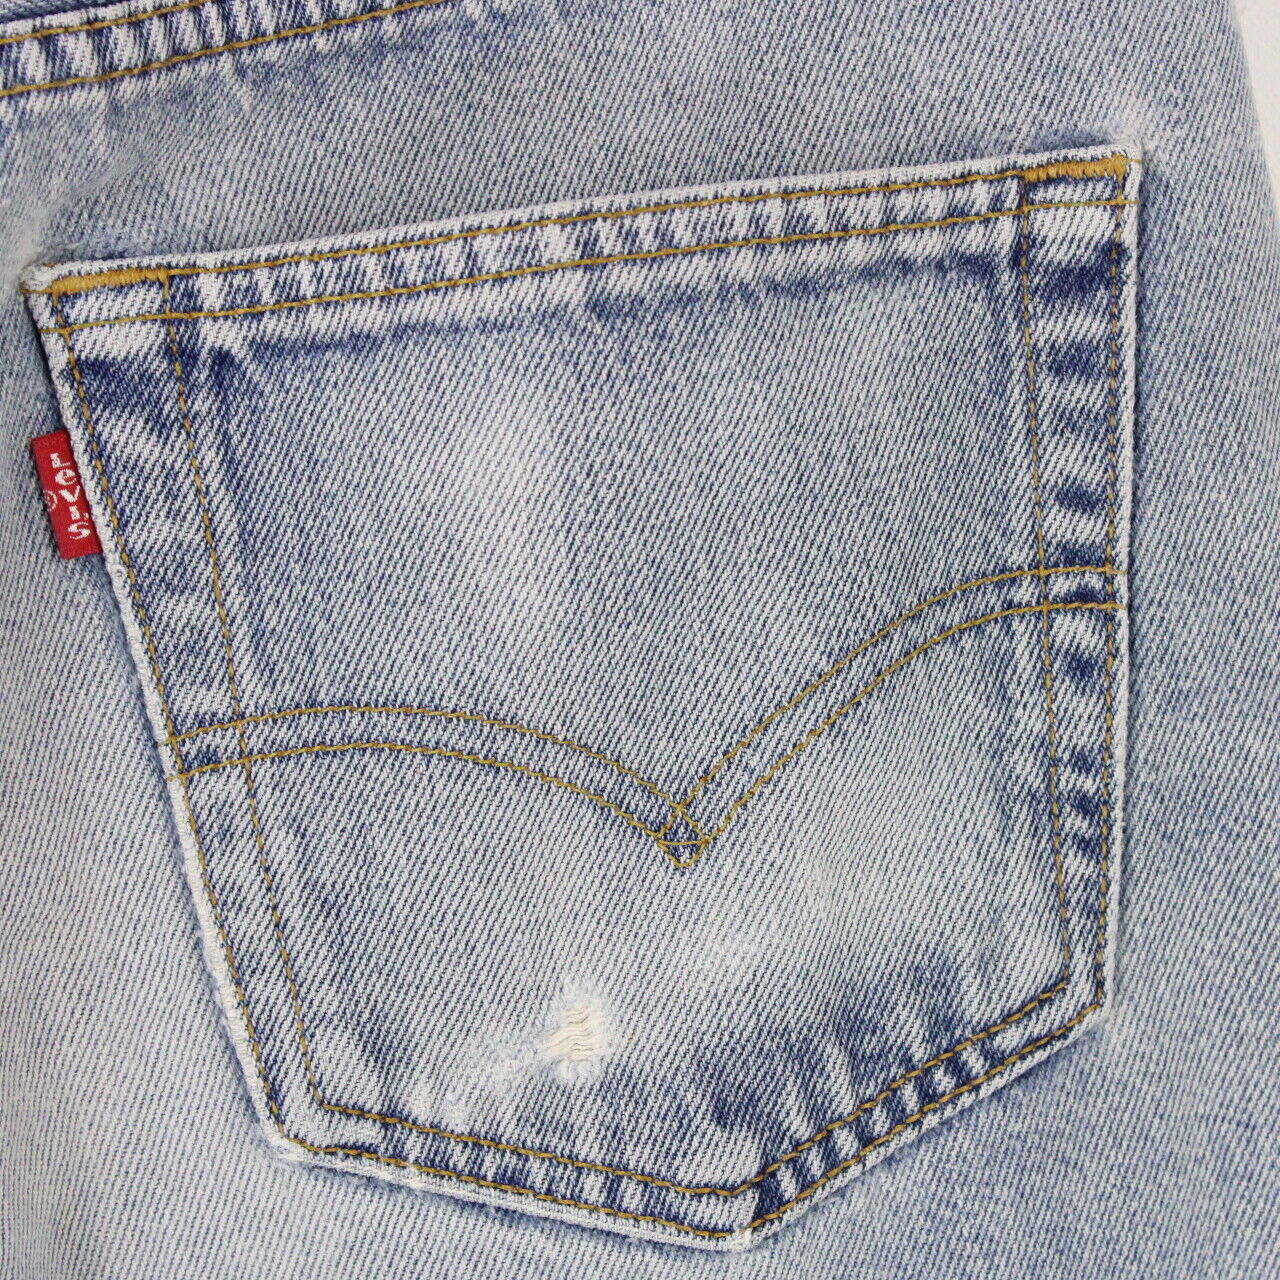 LEVIS 501 Jeans Light Blue | W32 L34